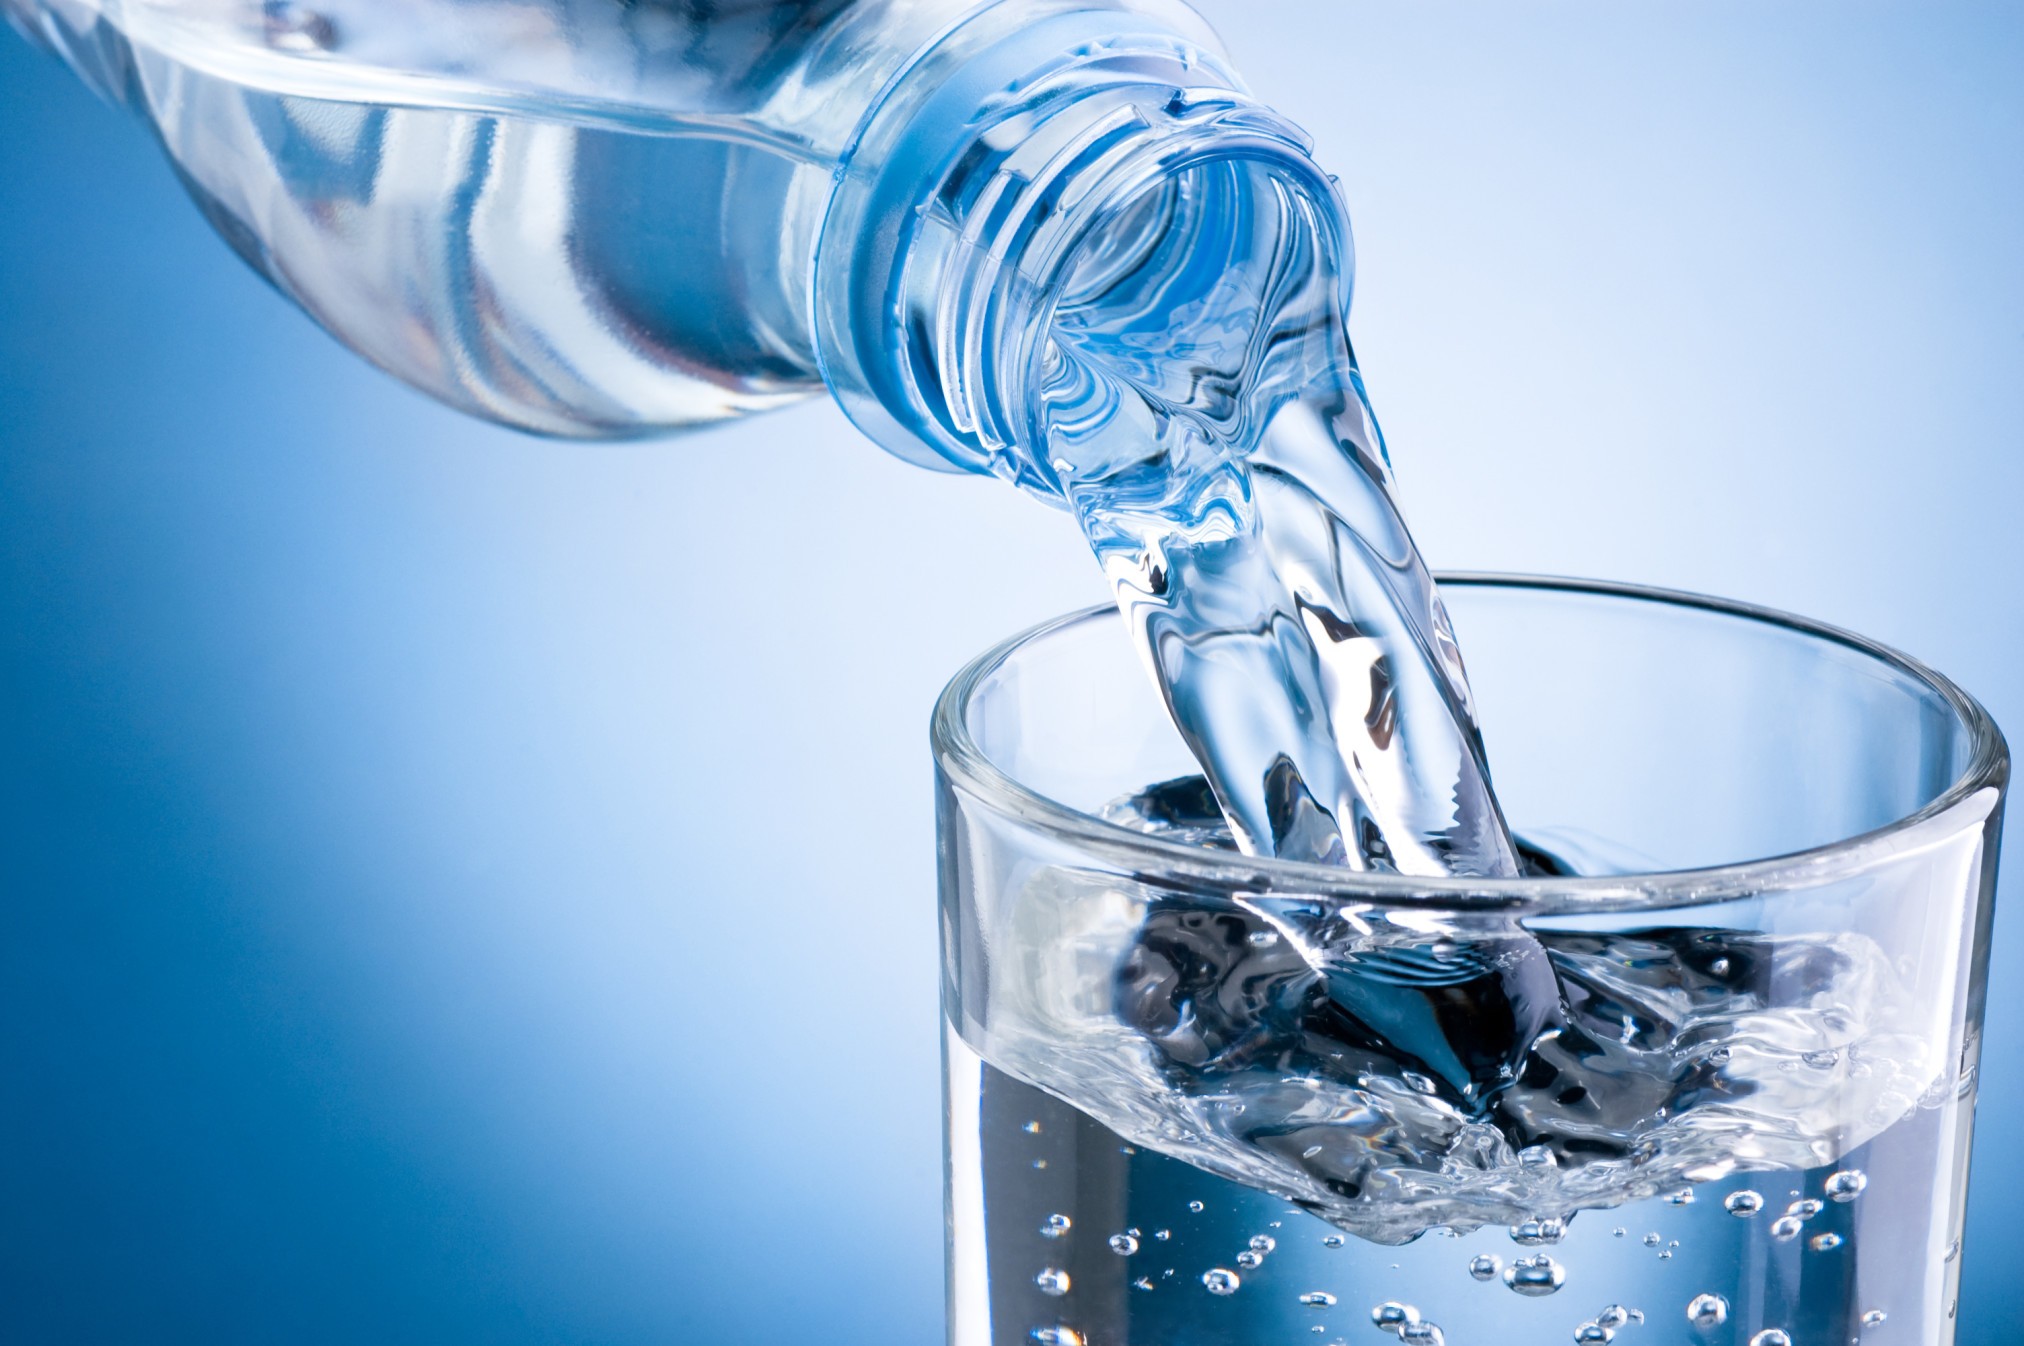 شرب الماء قبل الأكل.. 6 عادات تسرع حرق الدهون